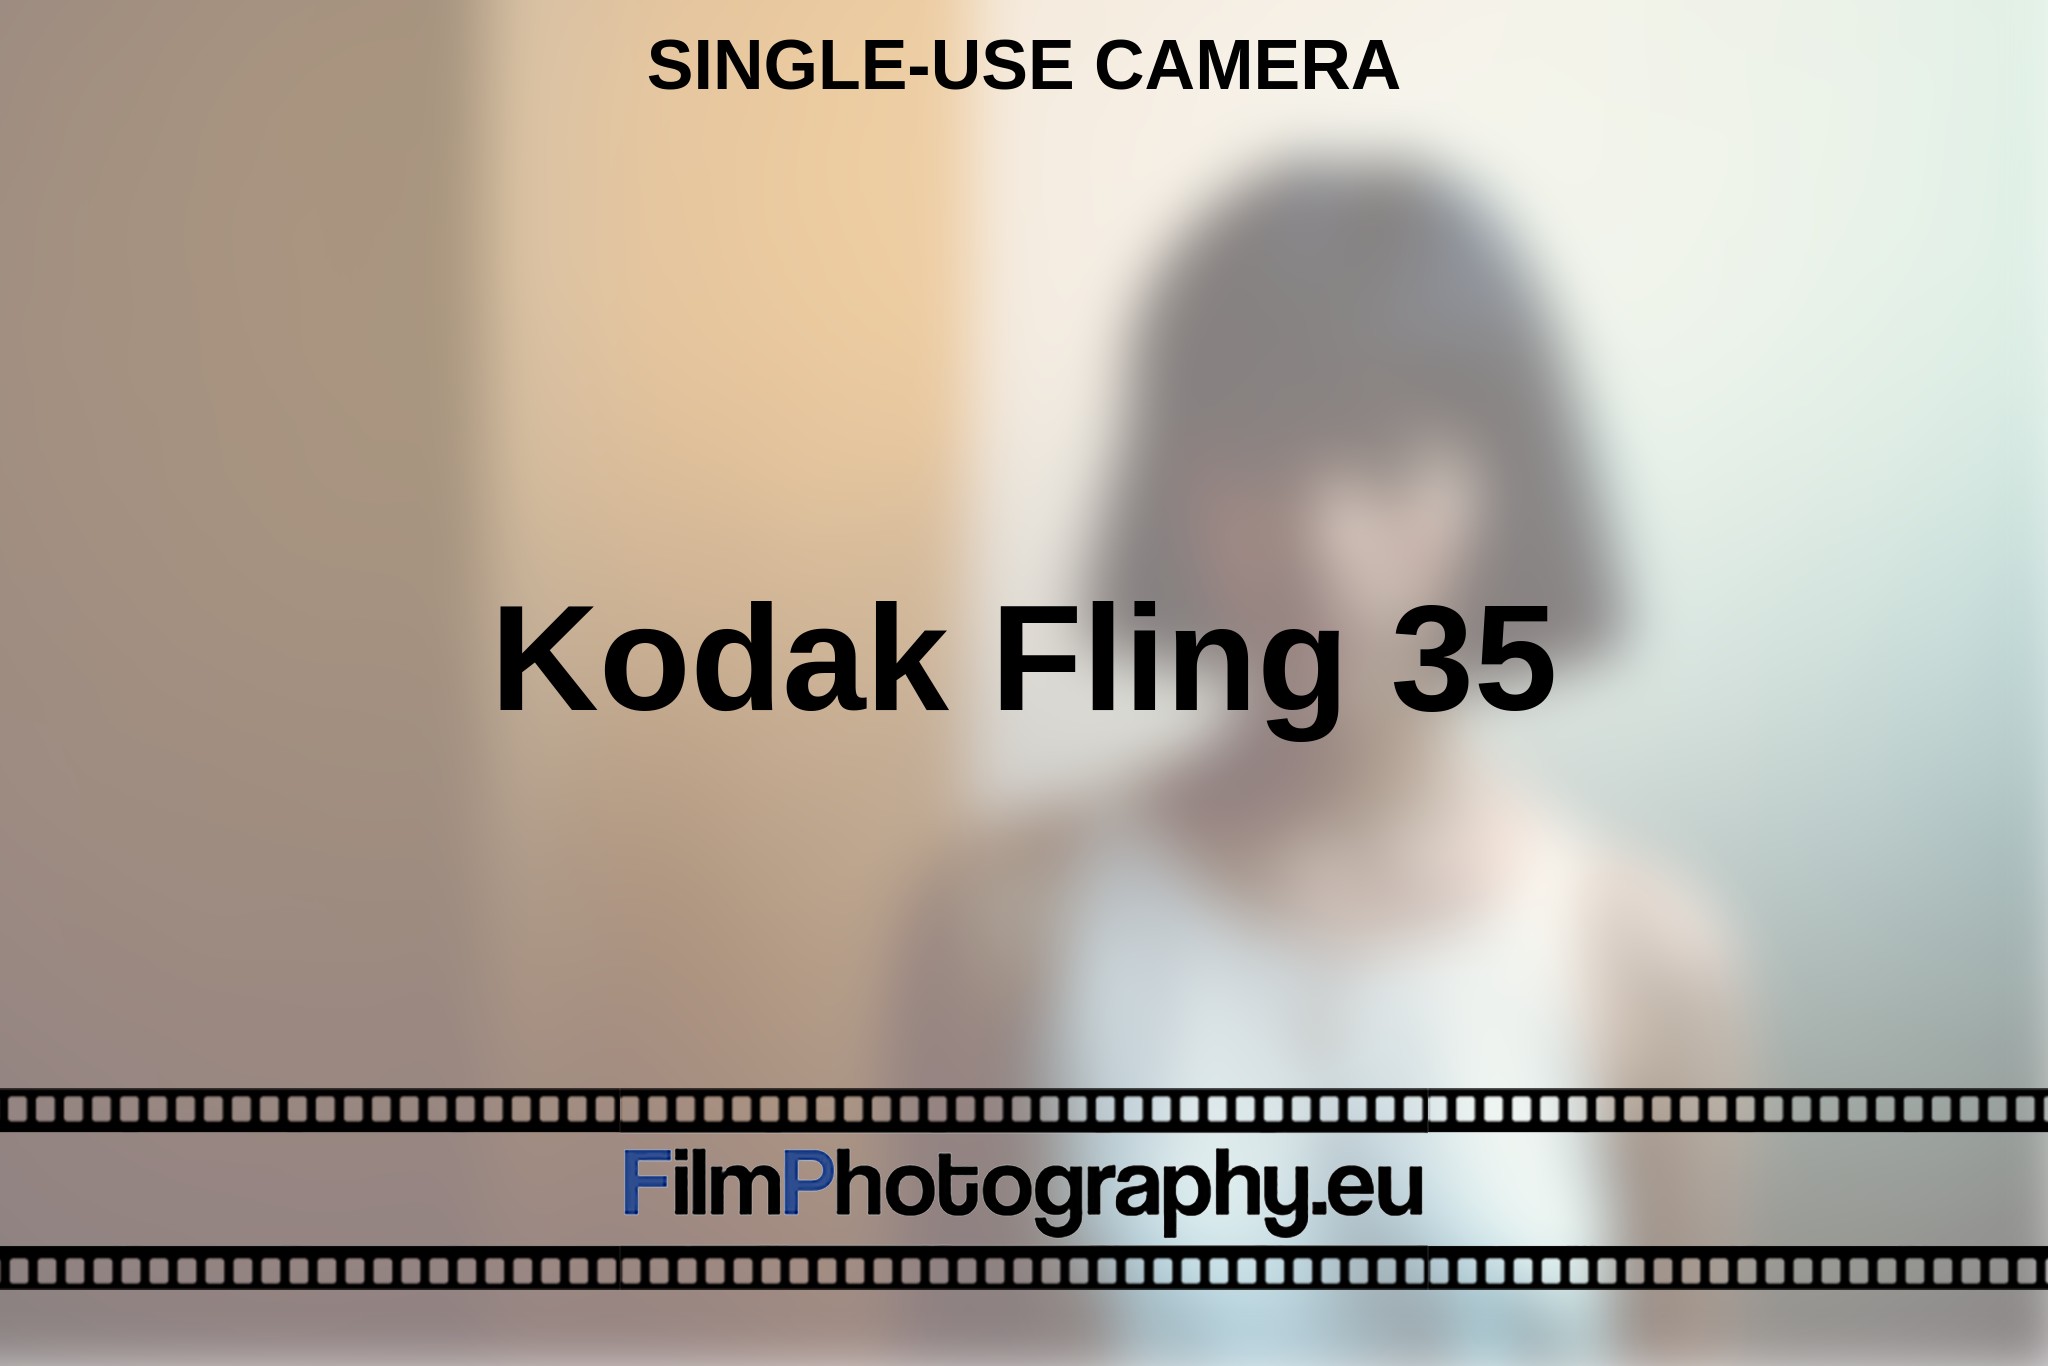 kodak-fling-35-single-use-camera-en-bnv.jpg